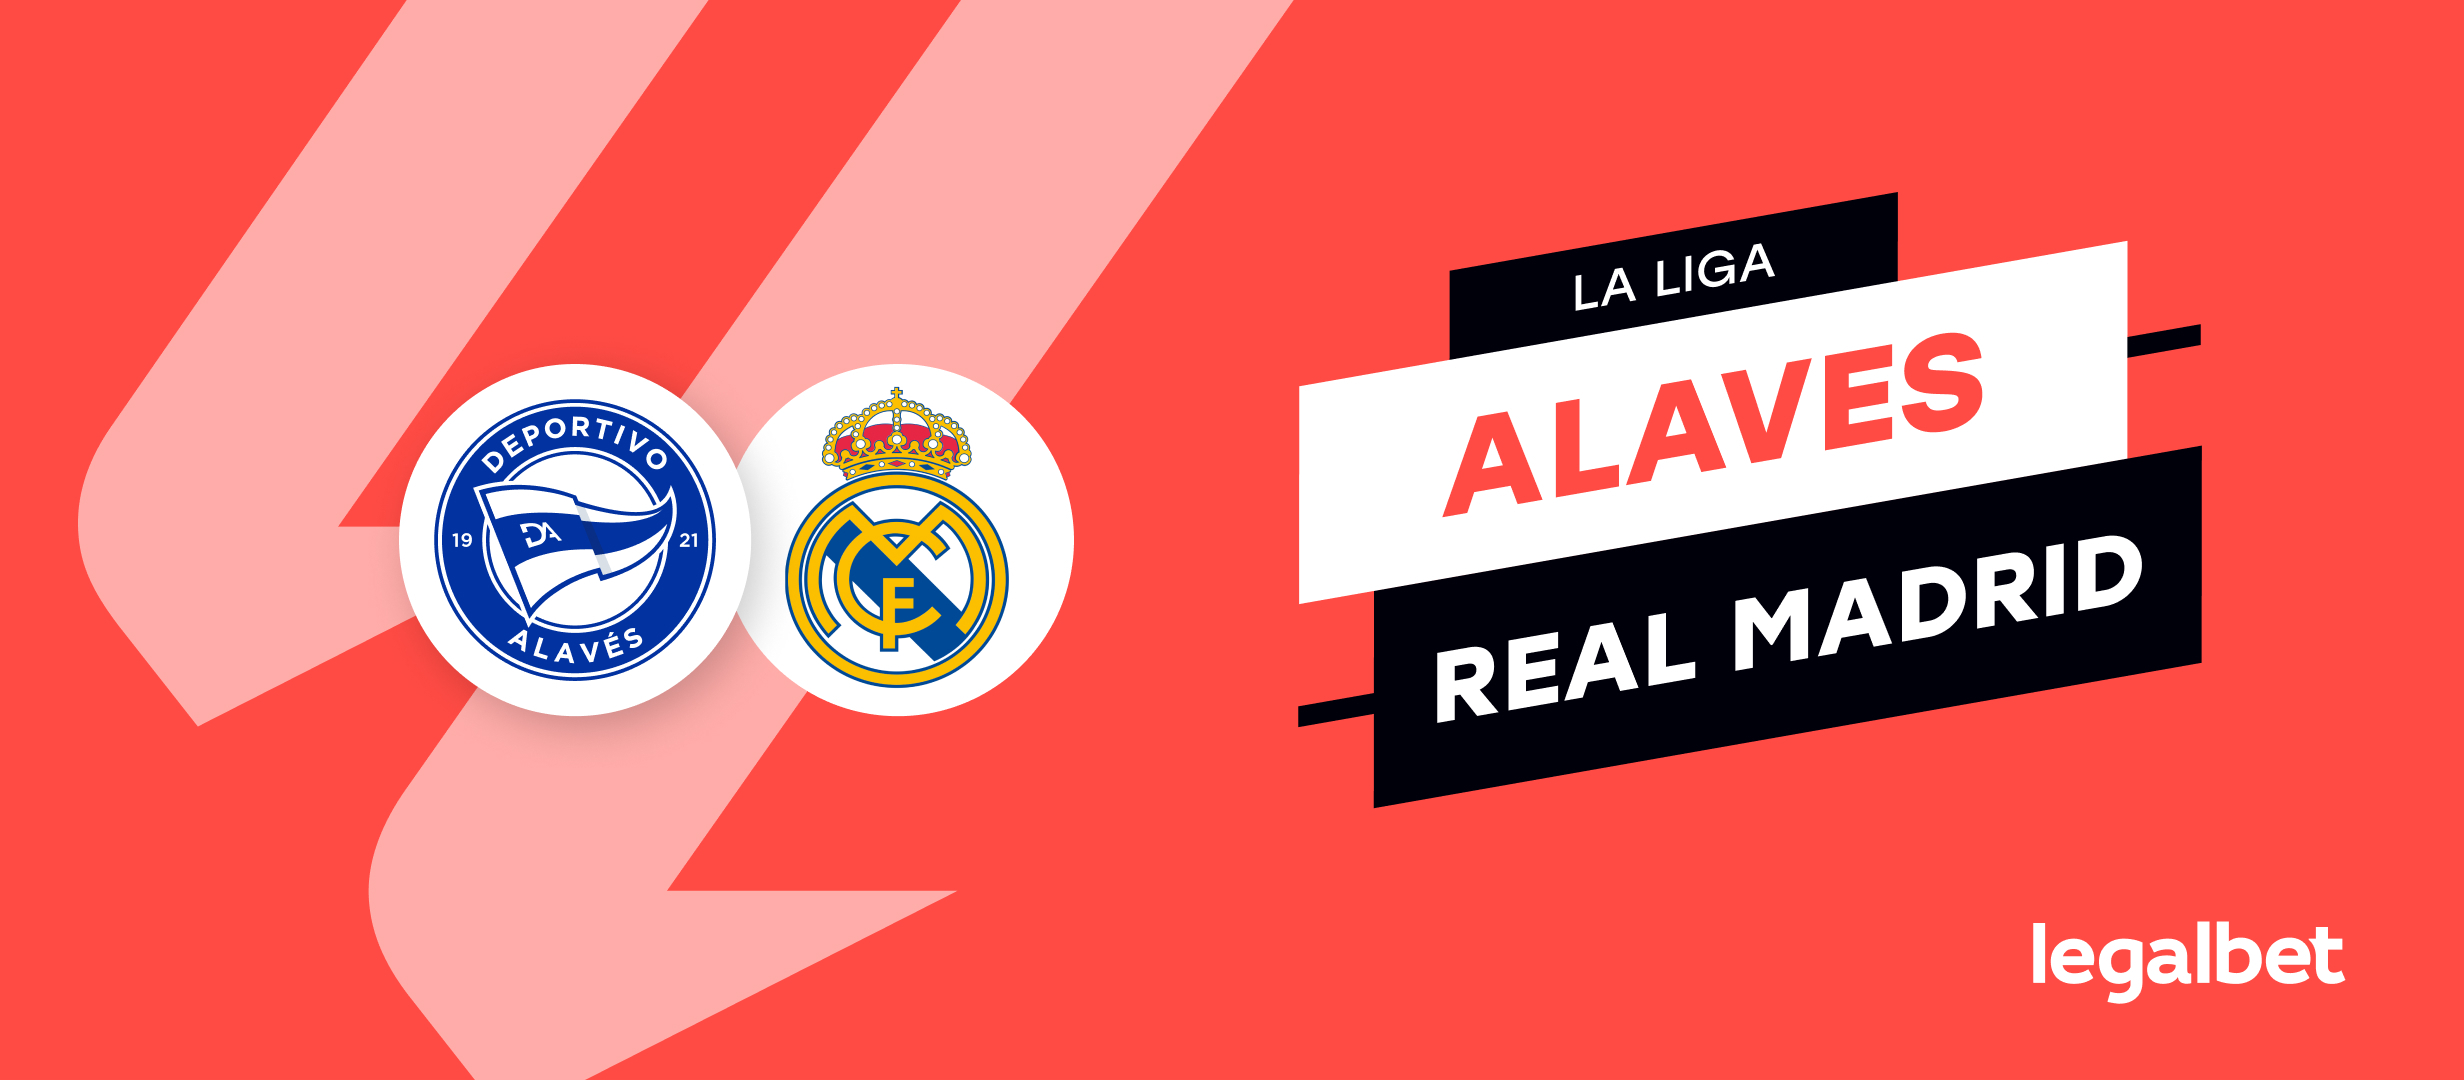 Alaves vs Real Madrid – cote la pariuri, ponturi si informatii